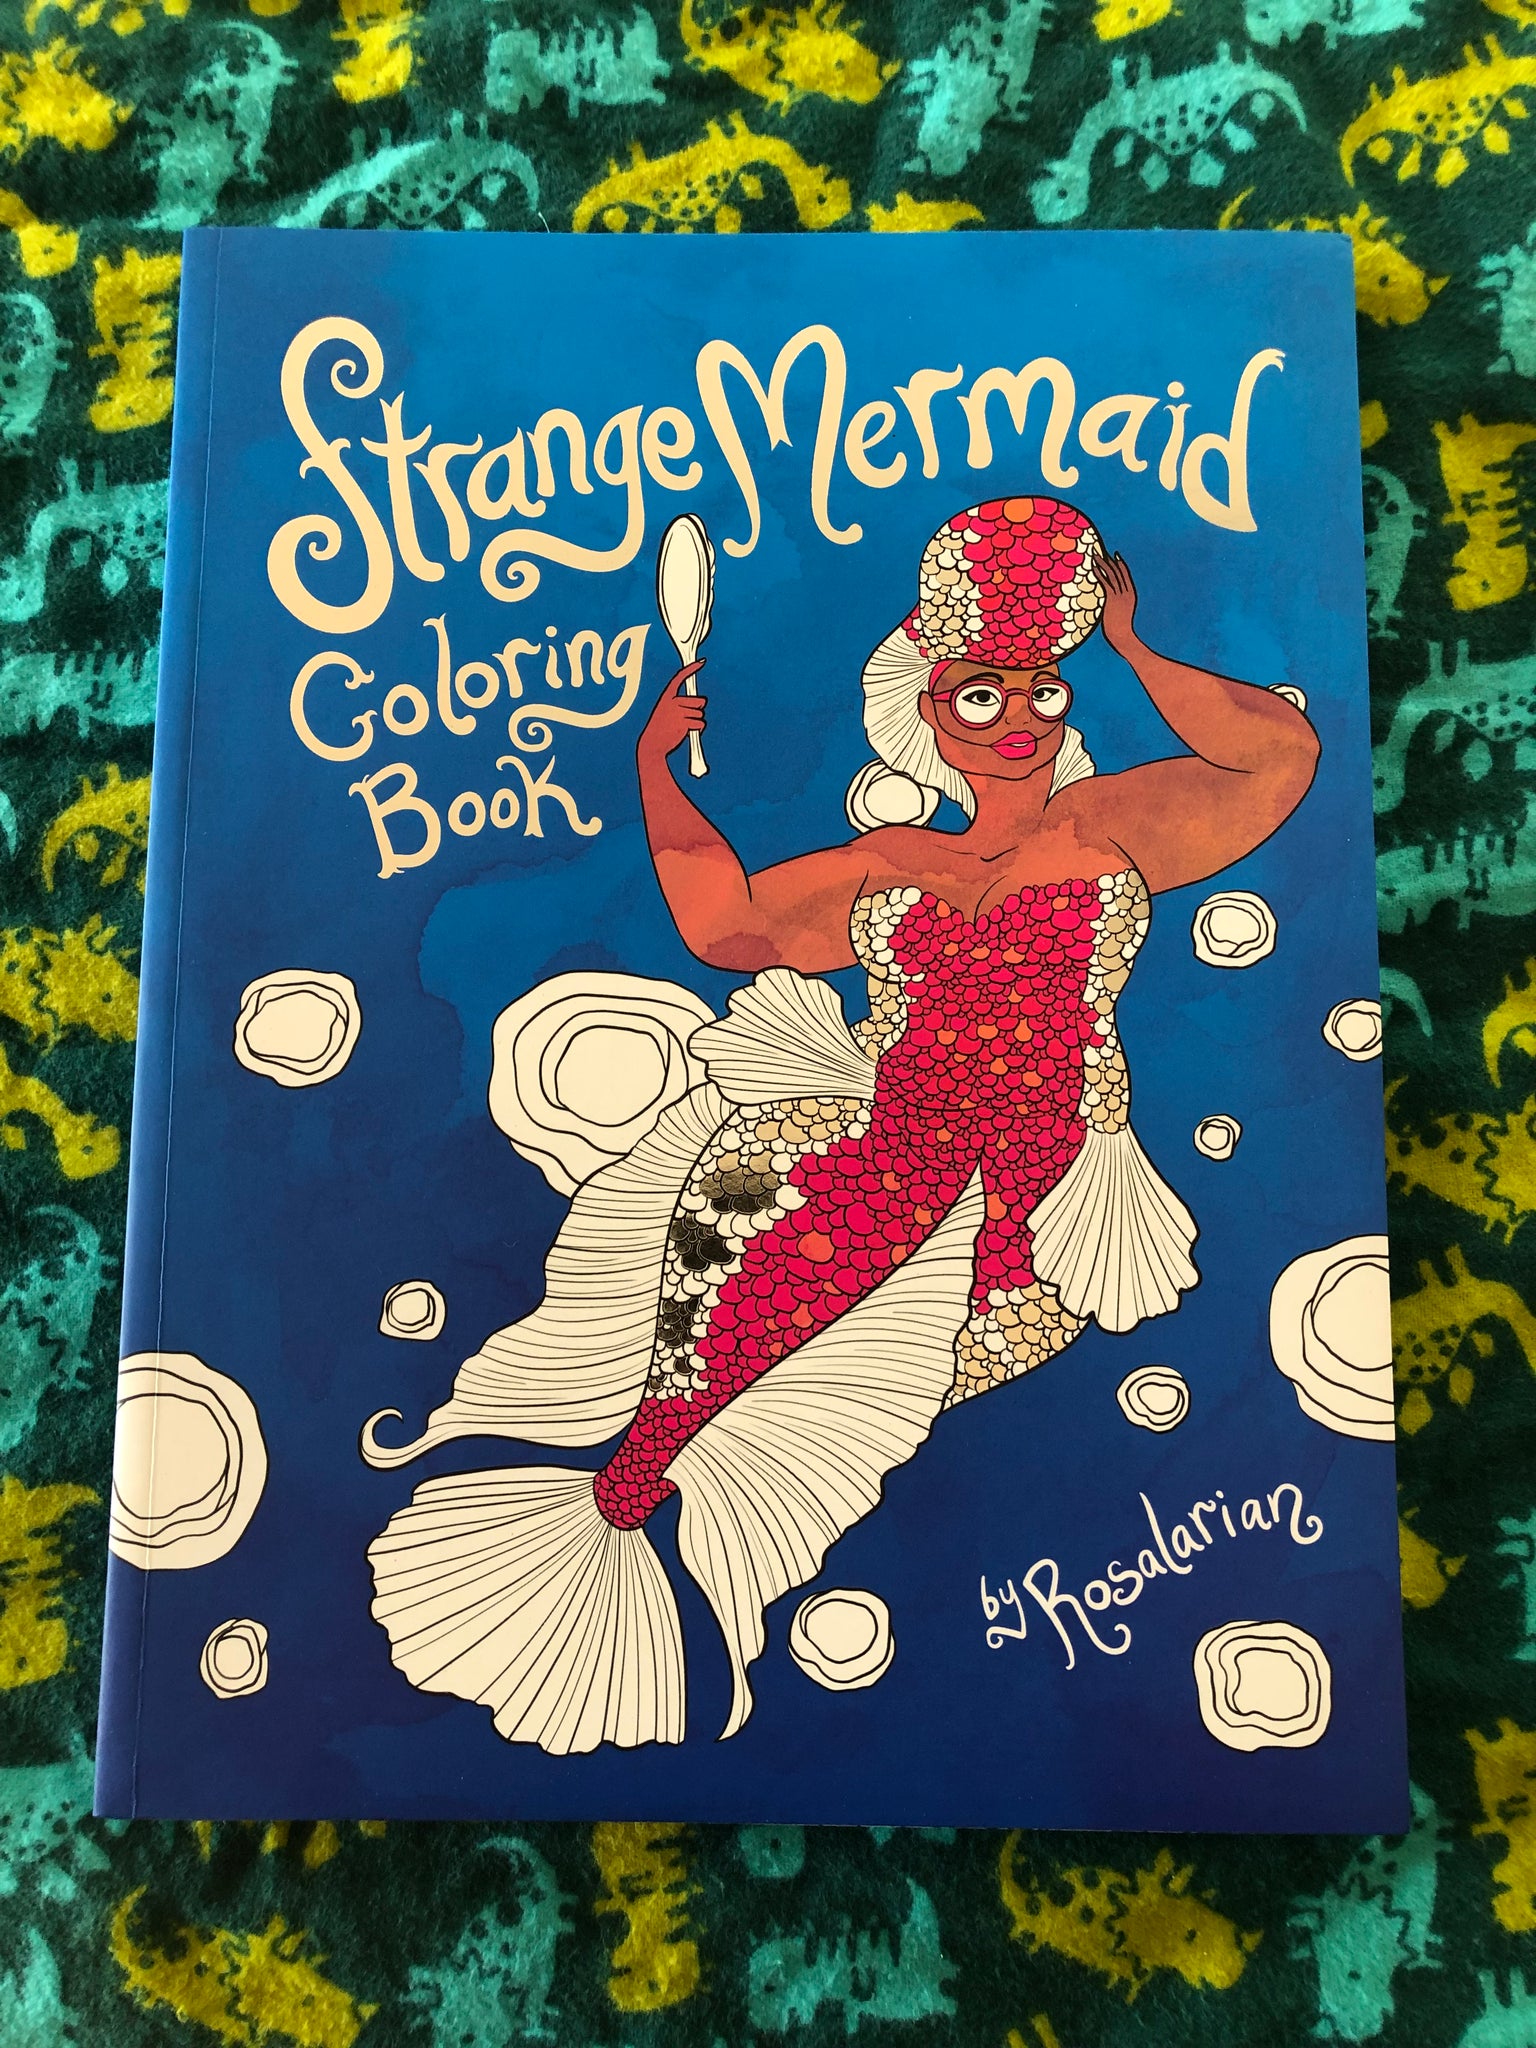 Mermaids Coloring Book [Book]